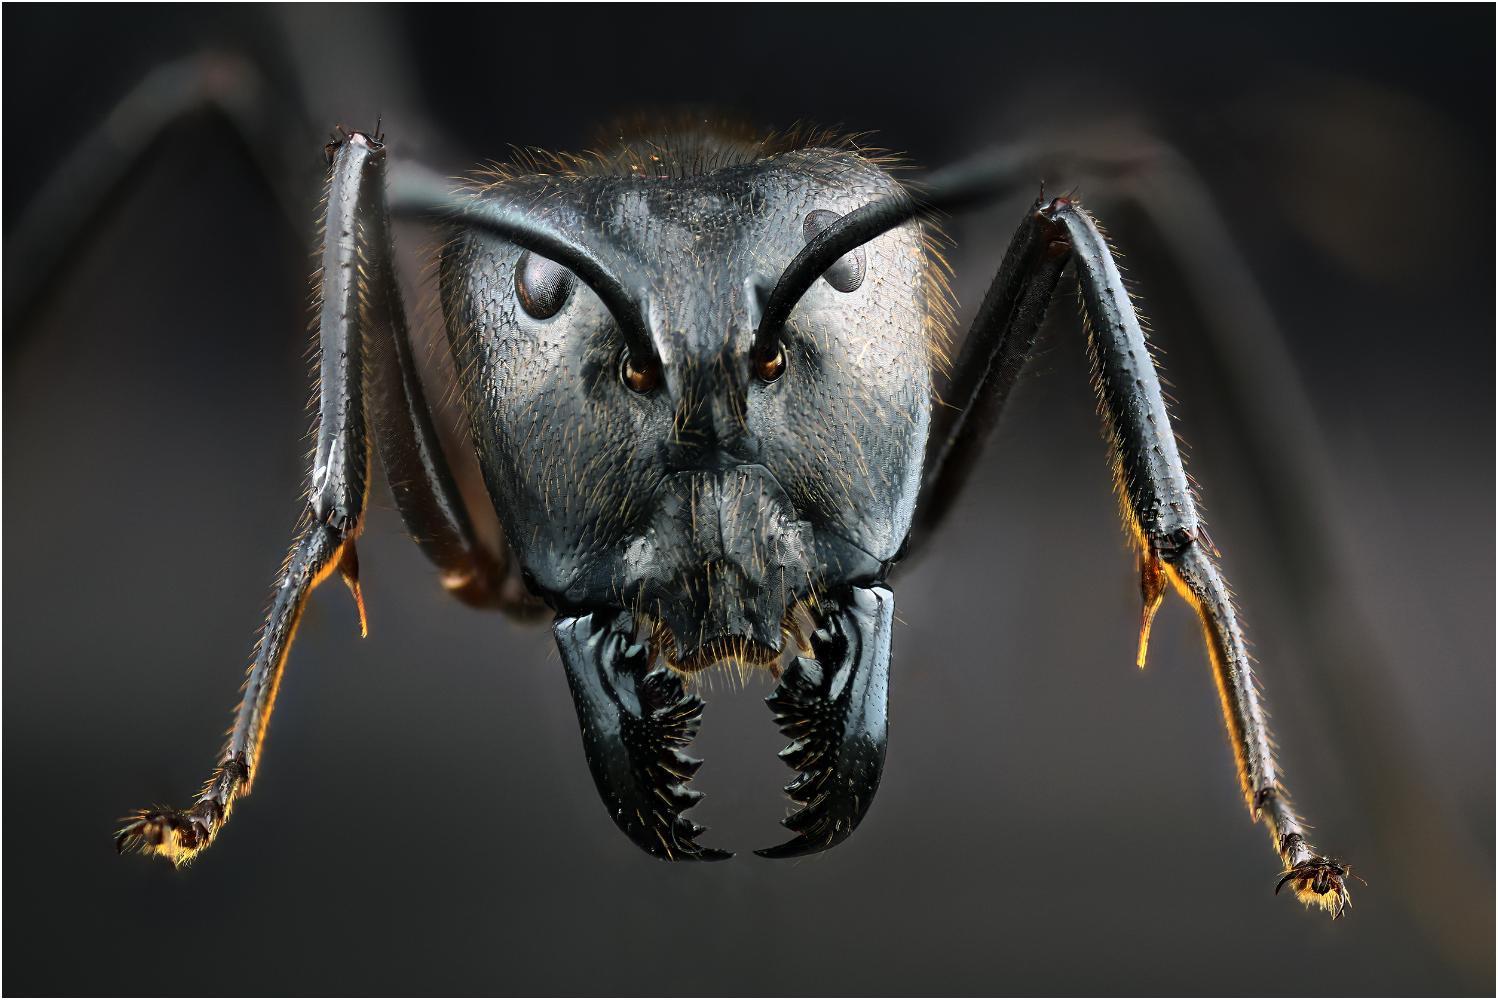 Cencini Carlo "Formica Camponotus" (2020)